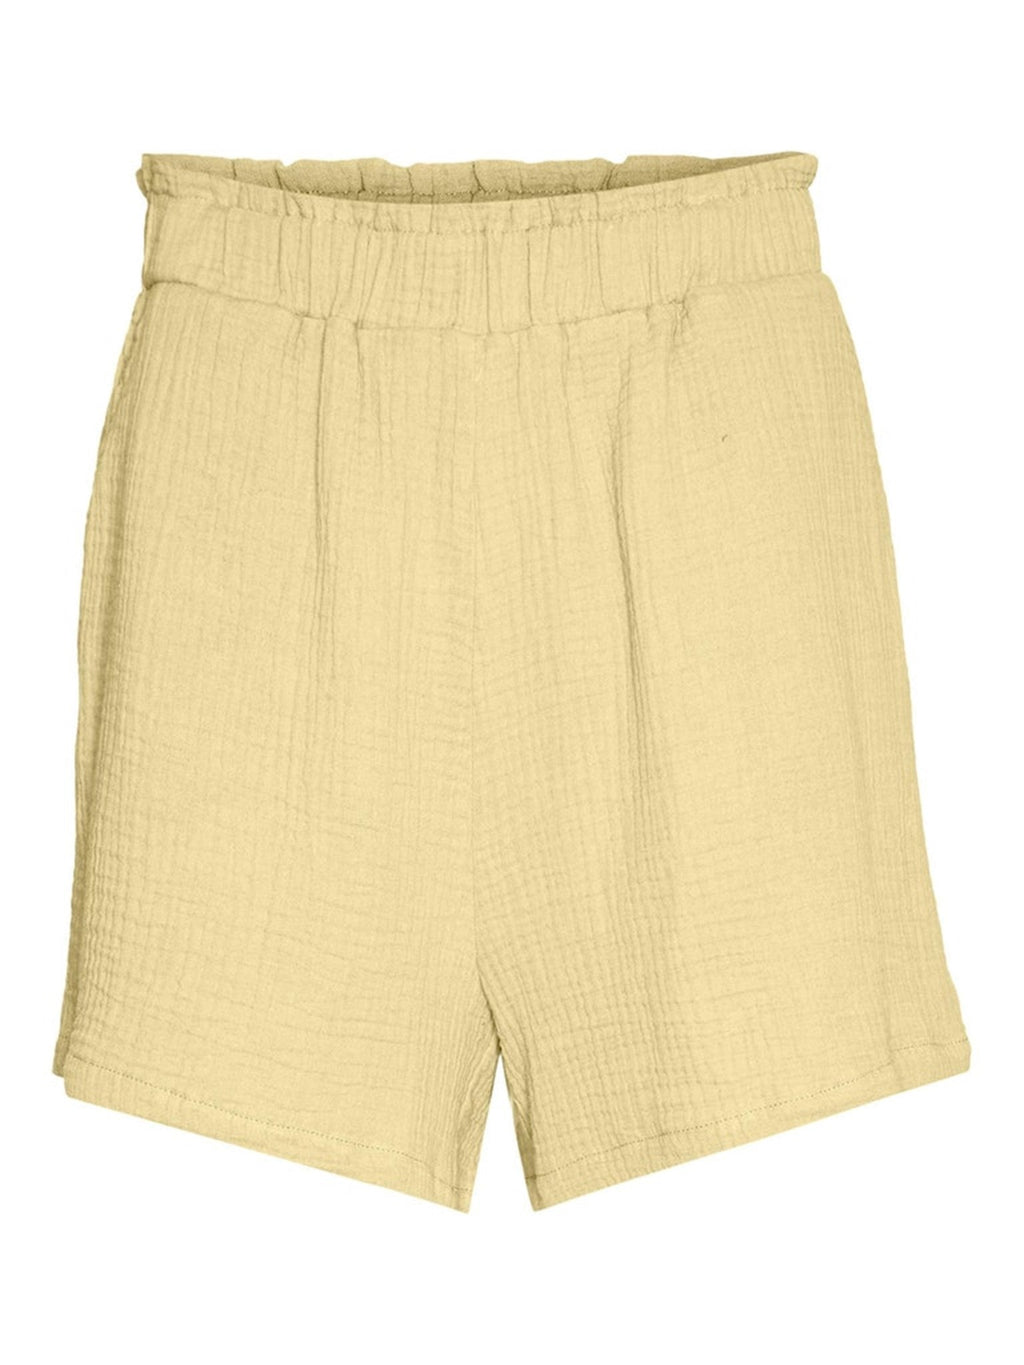 Natali shorts - citroen meringue